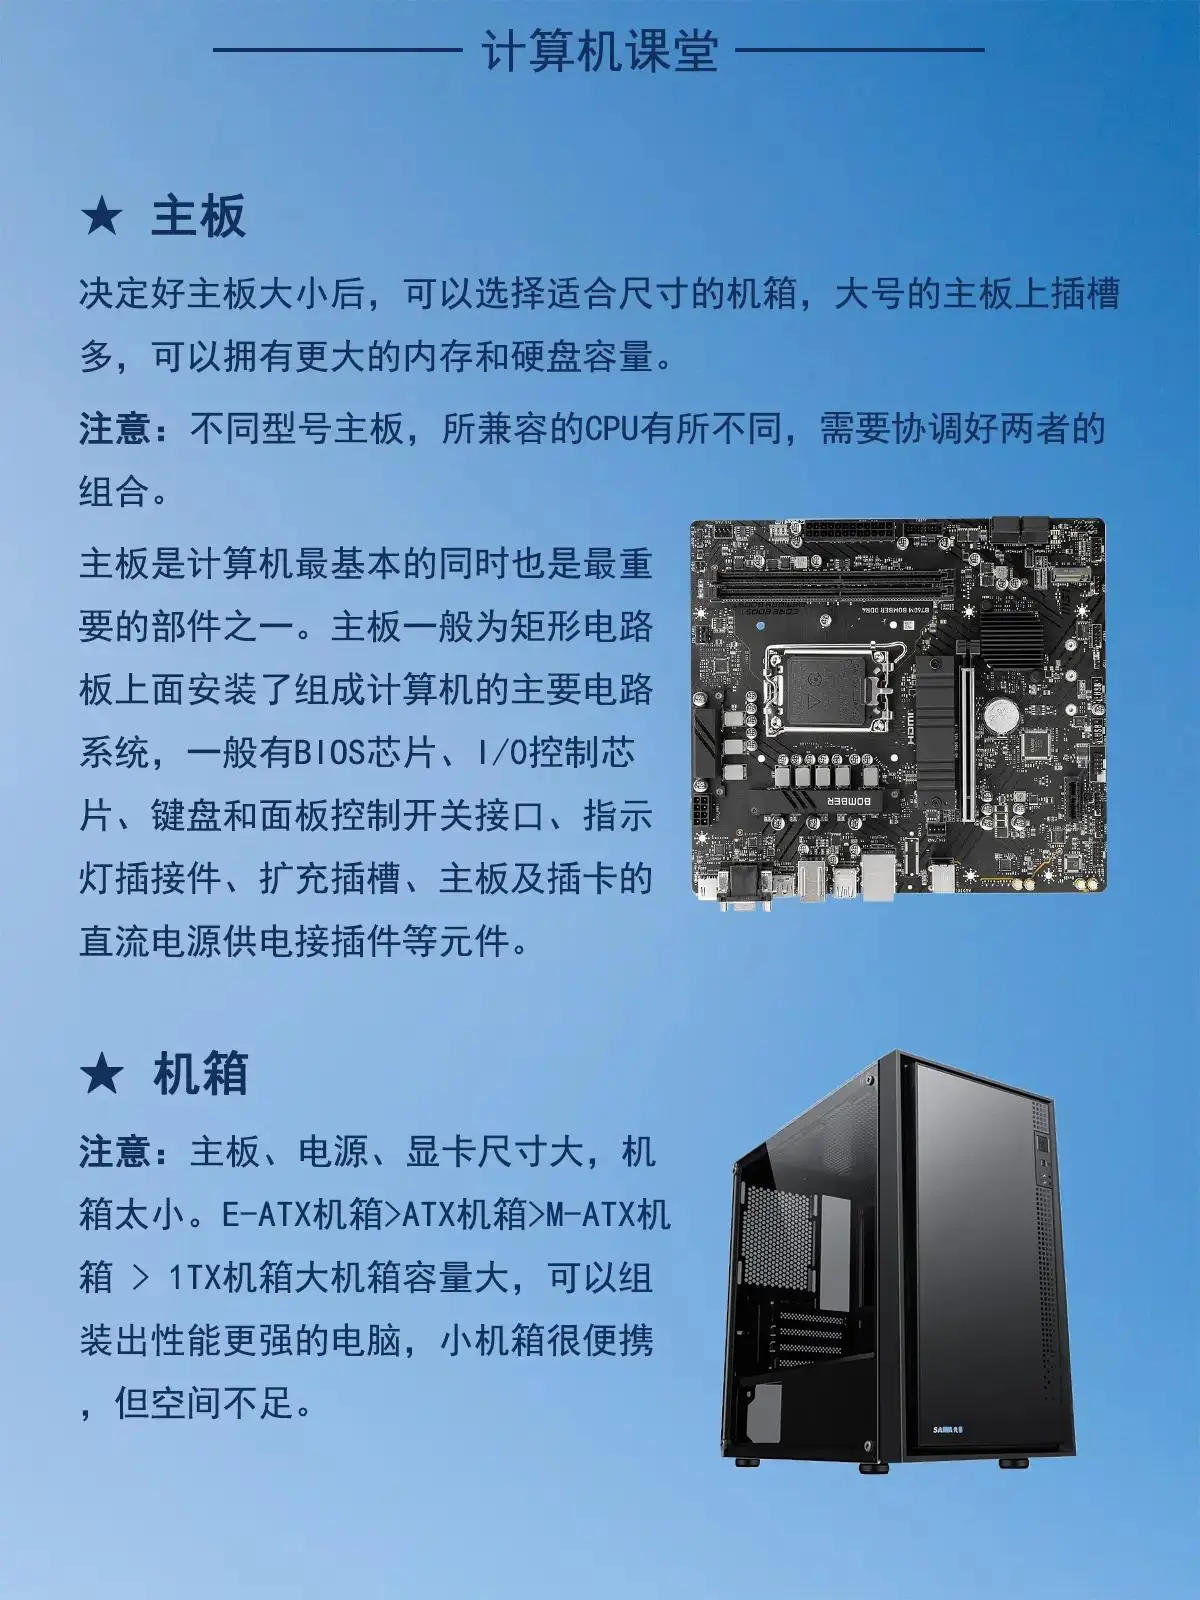 1万元预算如何选择合适的CPU和硬件组装高性能个人电脑：全面指南  第3张